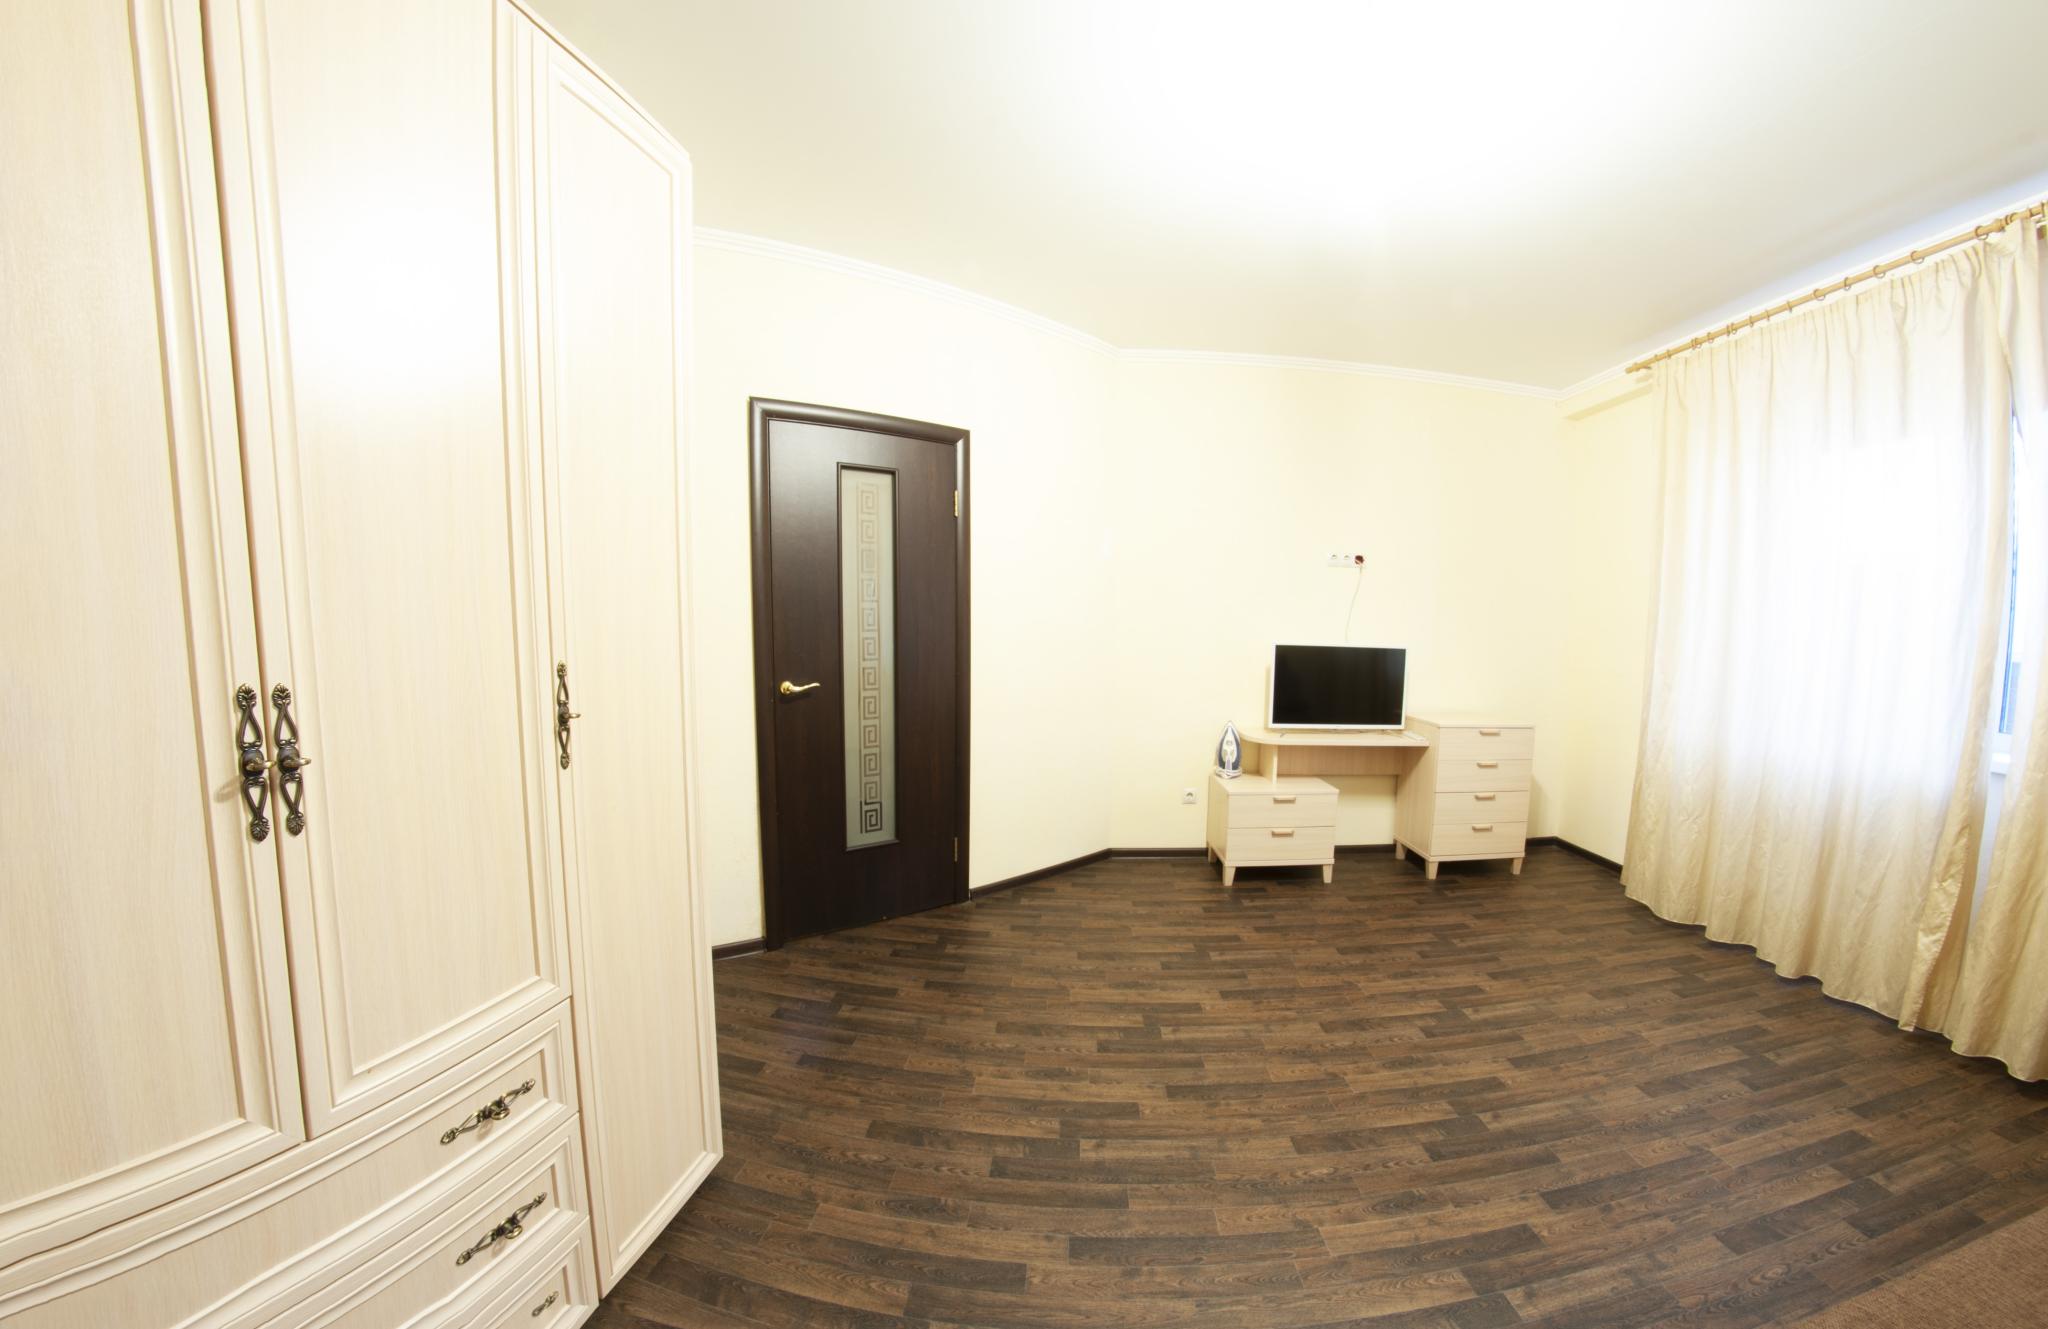 Купить квартиру на фабричной. Ялта мм гостиница Ялуторовск Тюменская область. Фабричная 9 квартира посуточно ванная.